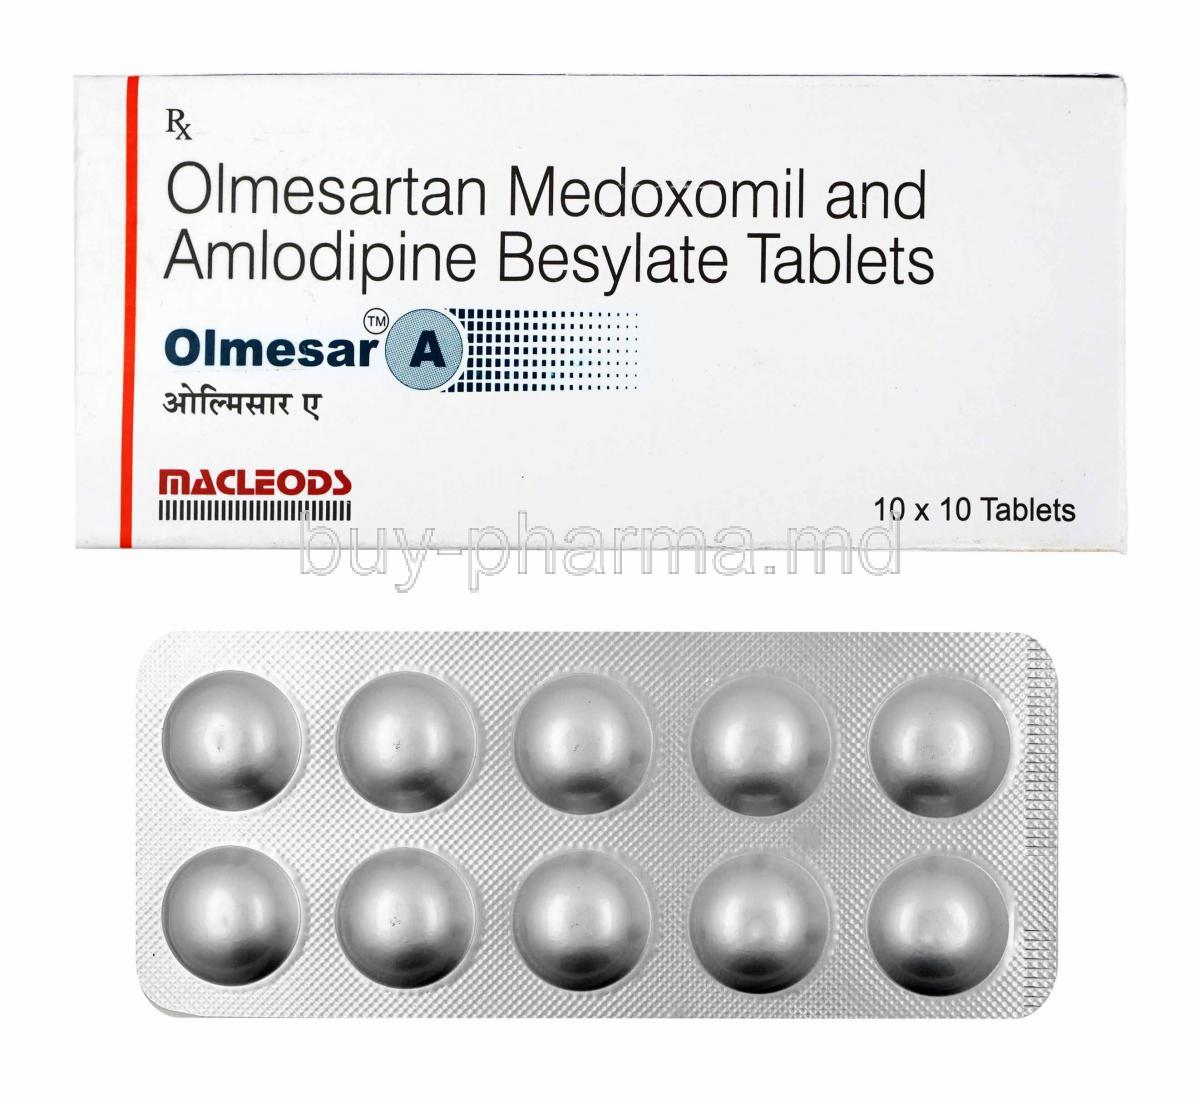 Olmesar A, Olmesartan and Amlodipine 20mg box and tablets